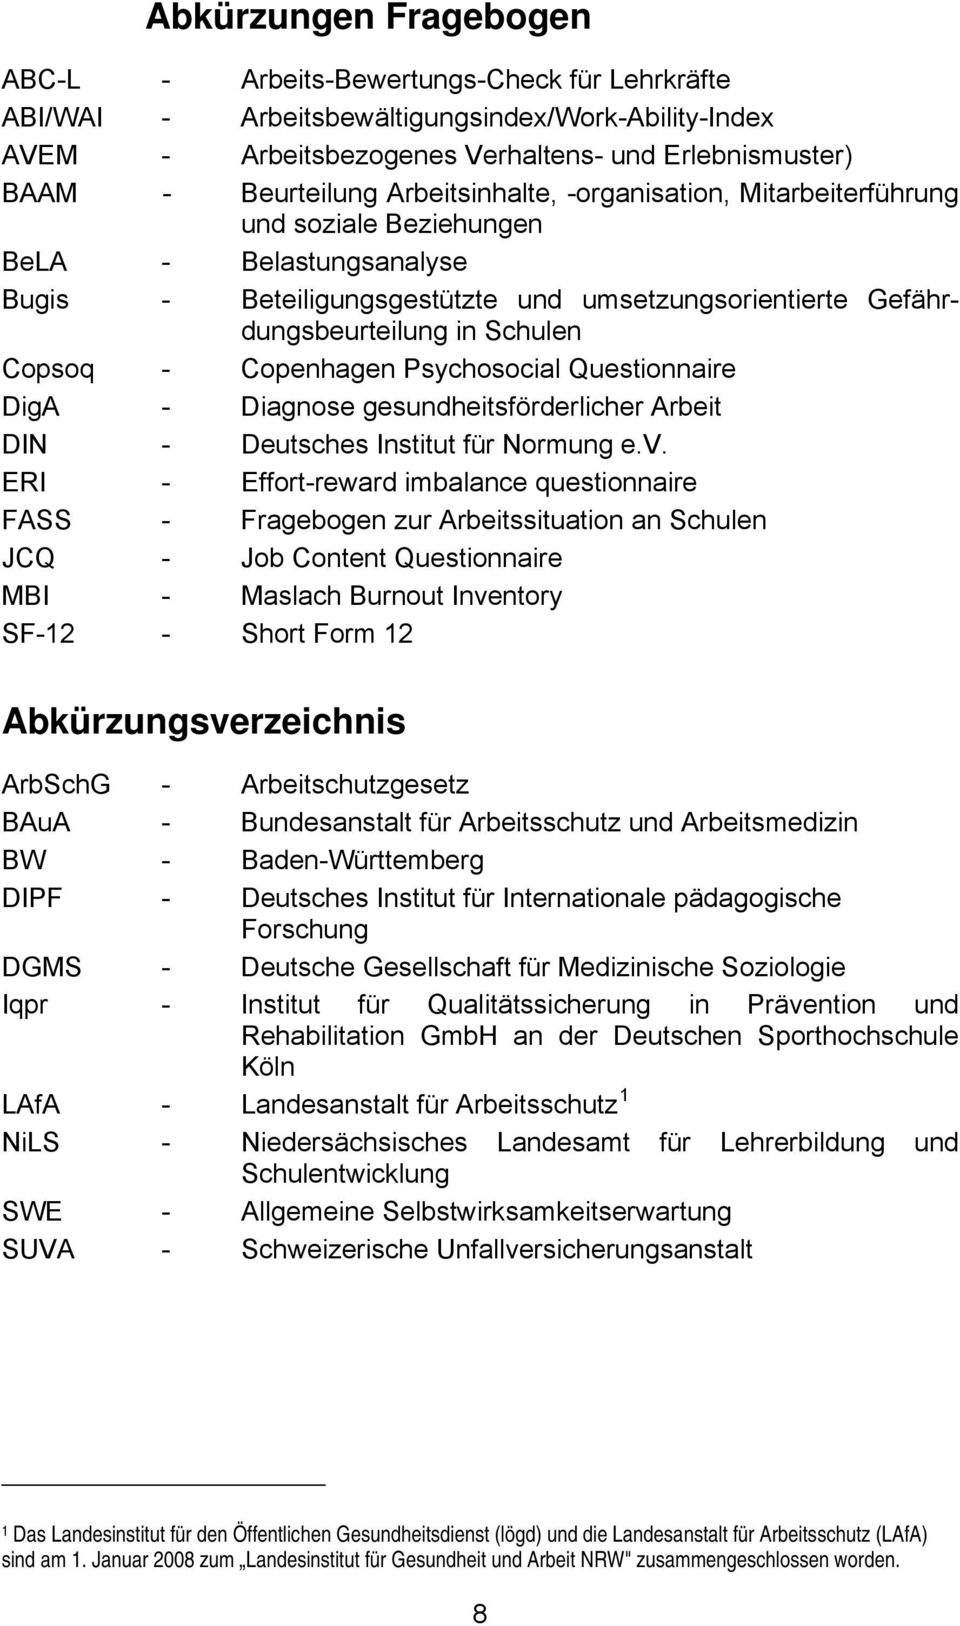 Copenhagen Psychosocial Questionnaire DigA - Diagnose gesundheitsförderlicher Arbeit DIN - Deutsches Institut für Normung e.v.